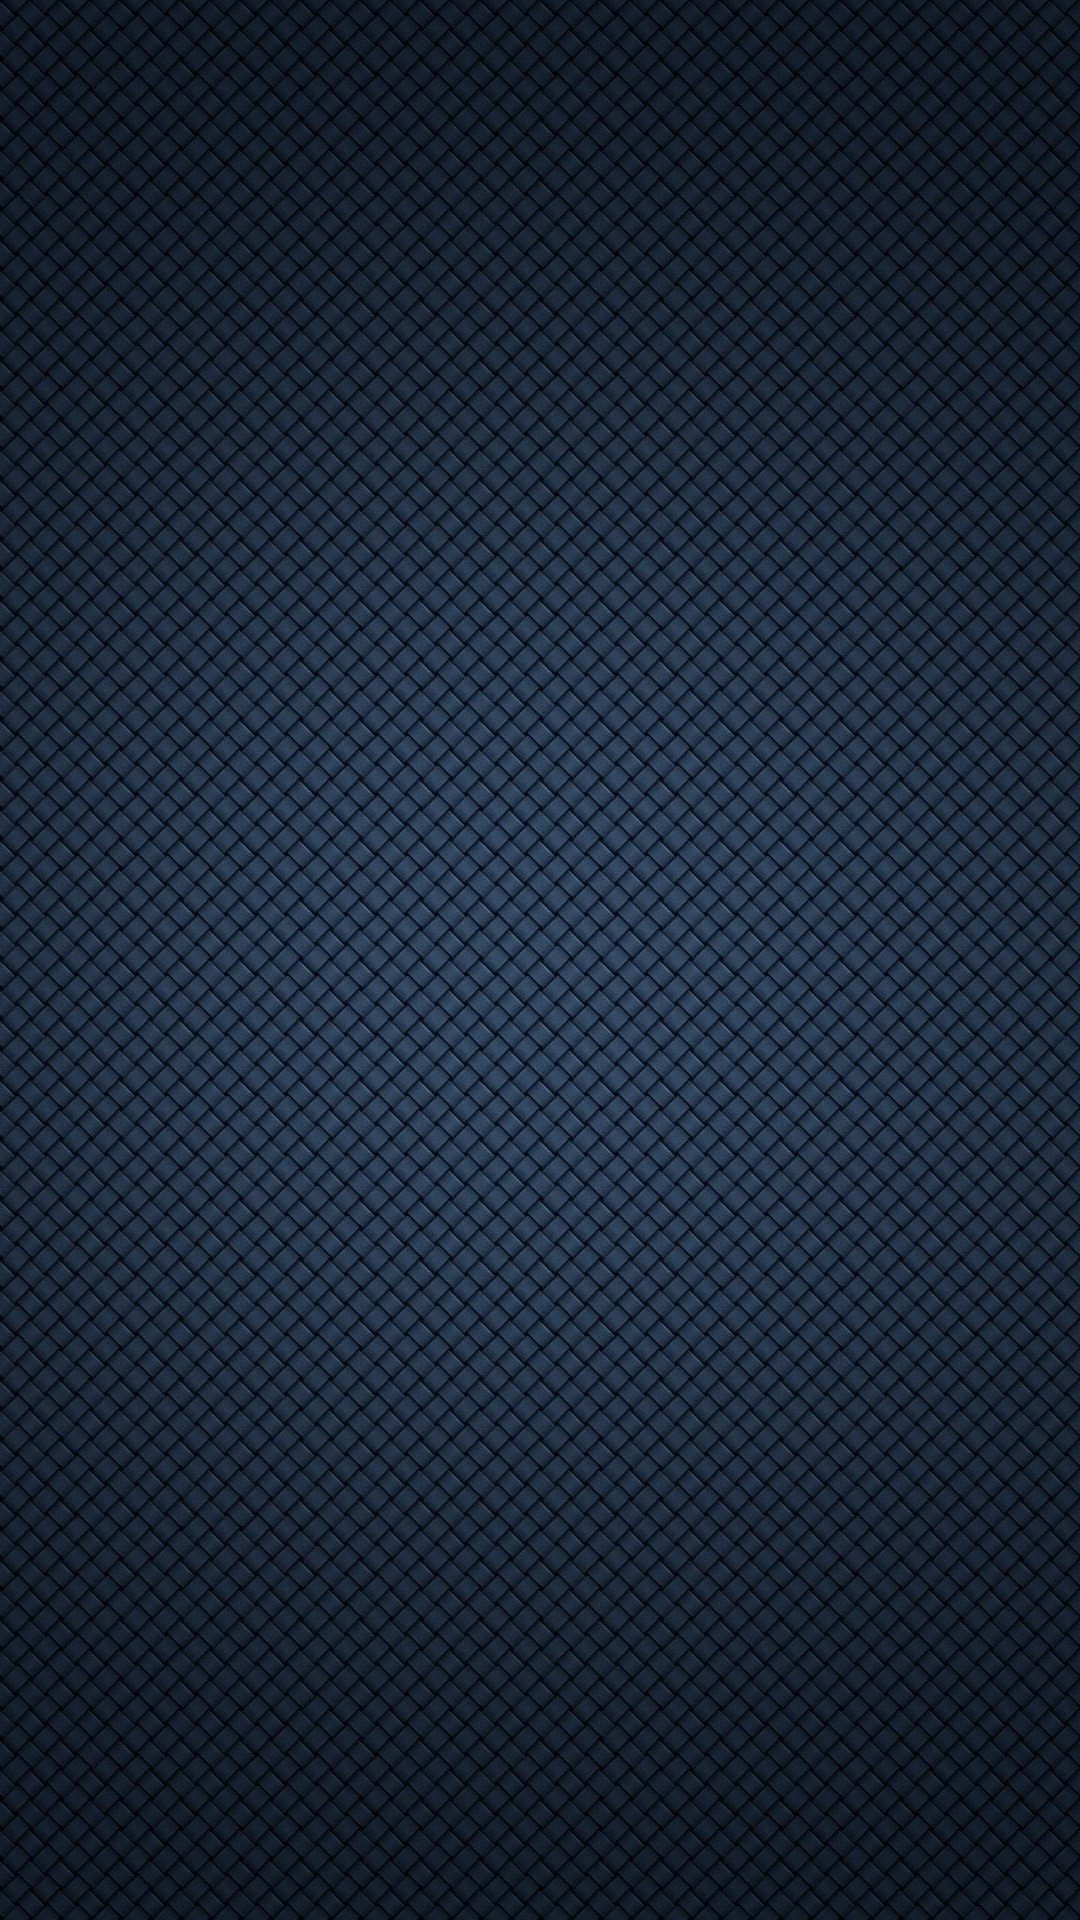 [49+] Black Wallpaper for iPhone 6s on WallpaperSafari